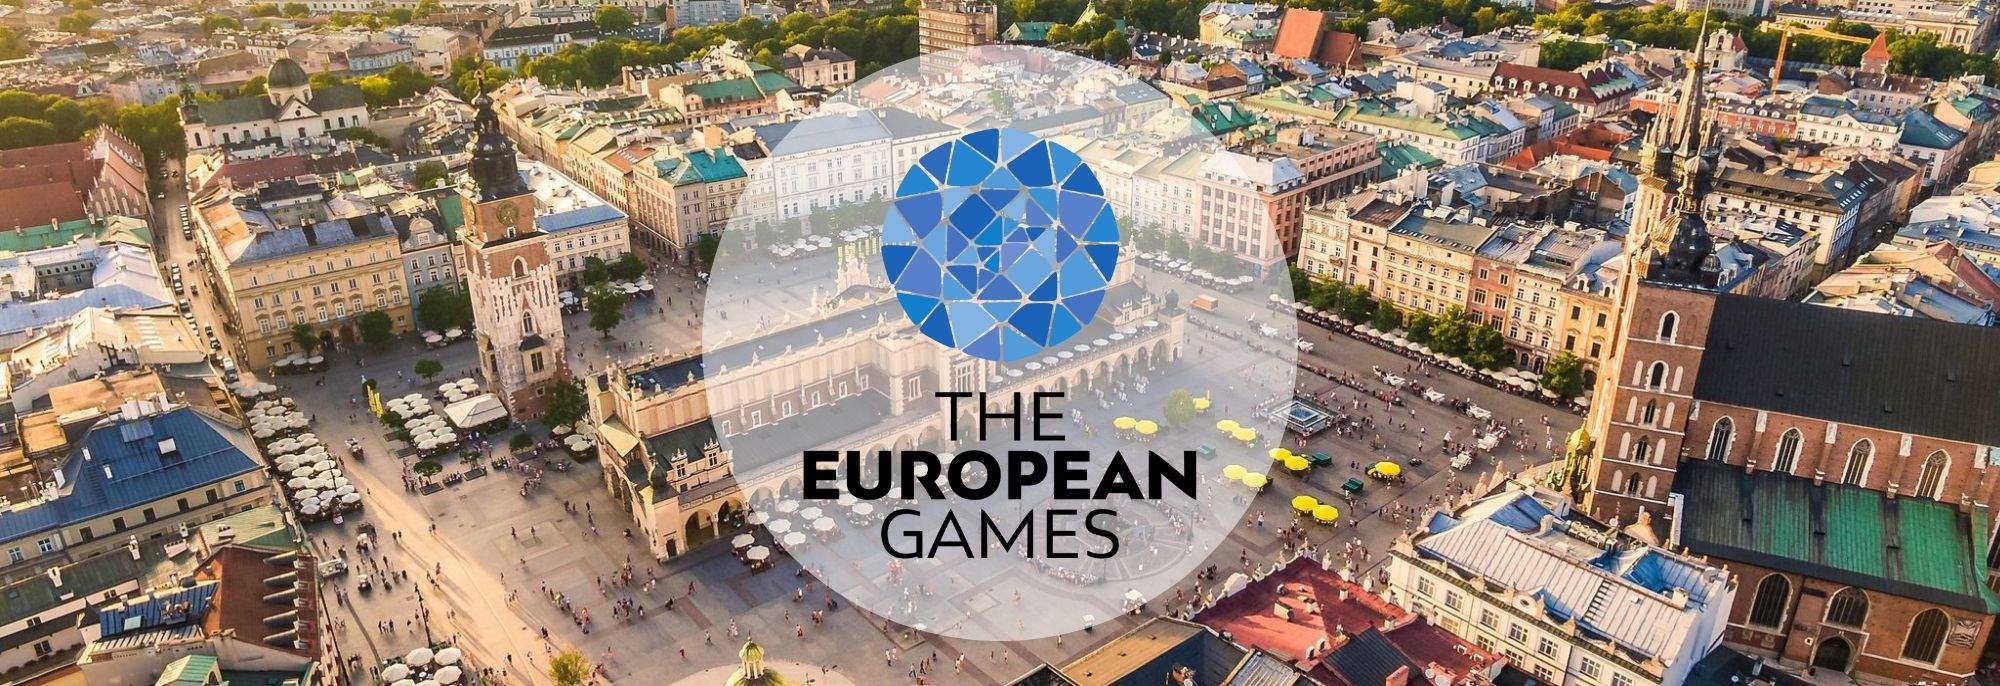 Inauguración de los III Juegos Europeos en Cracovia y Malopolska 2023 – Un espectáculo de deporte y cultura